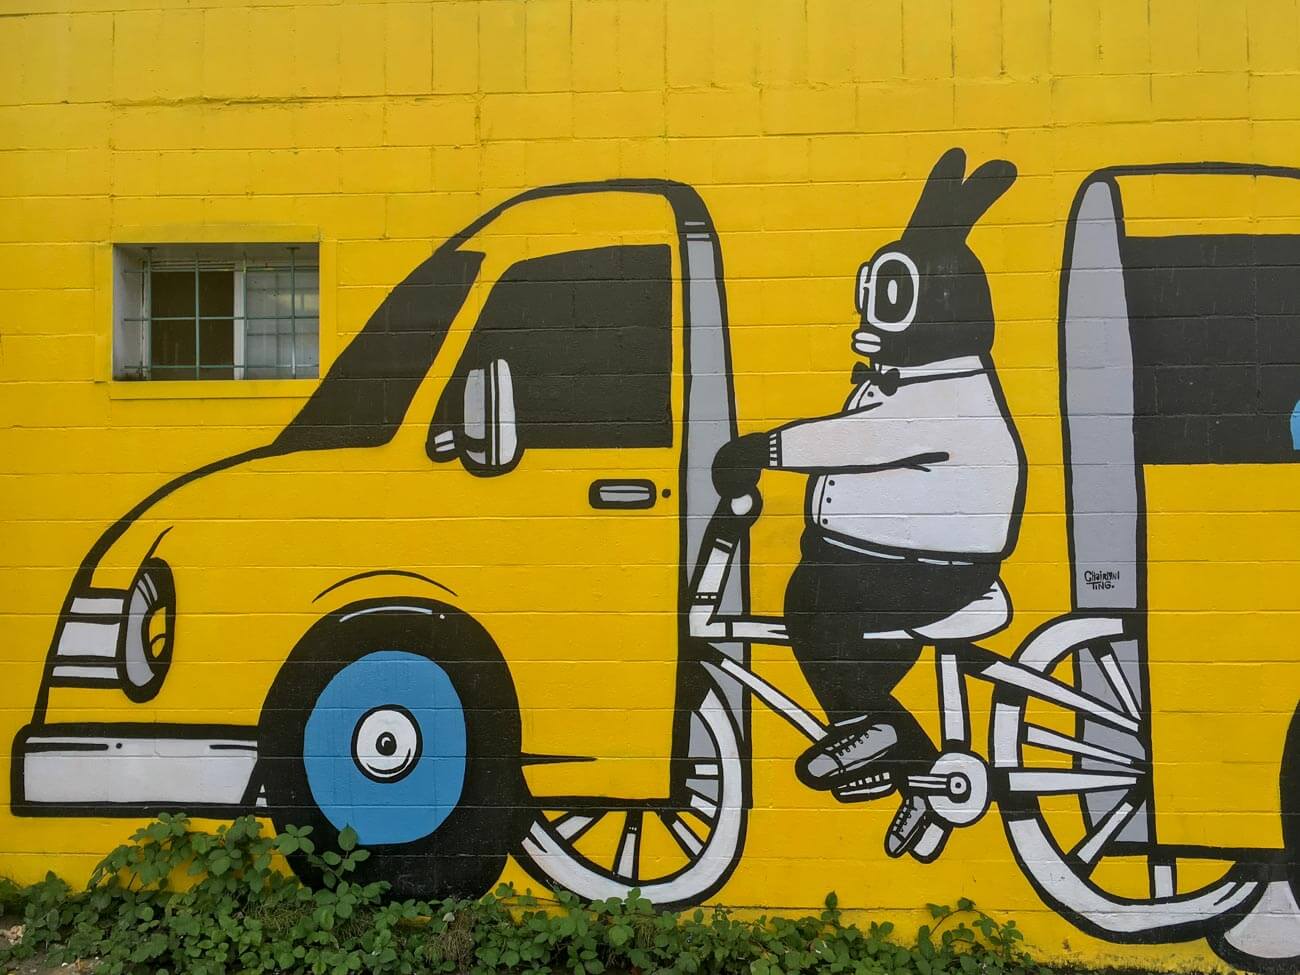 Street art of biker in car